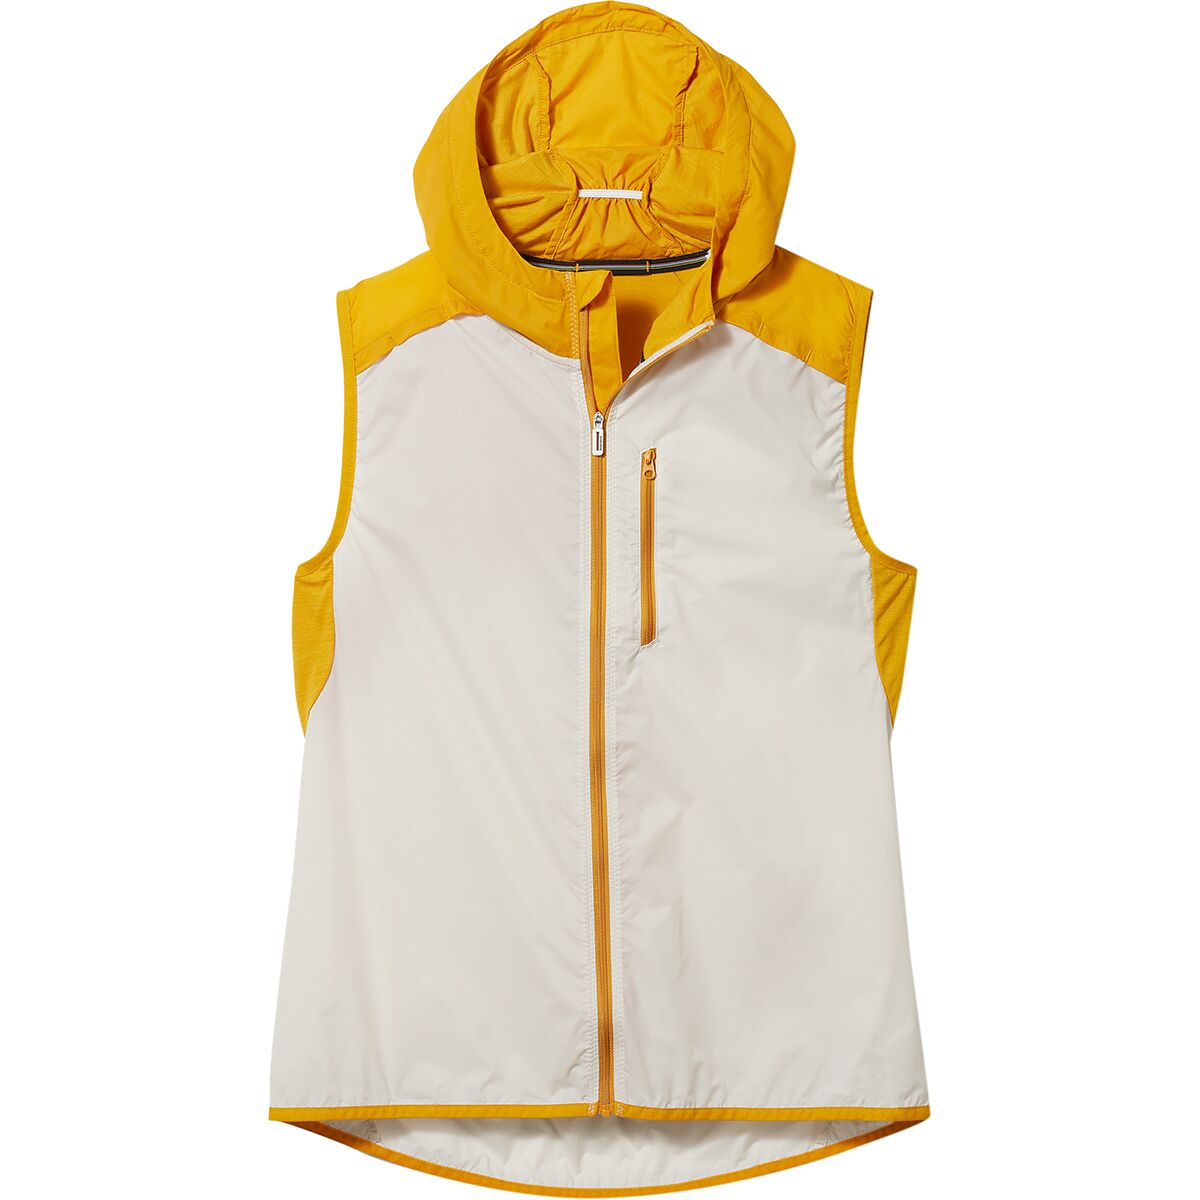 Smartwool Merino Sport Ultra Light Vest - Women's - Clothing